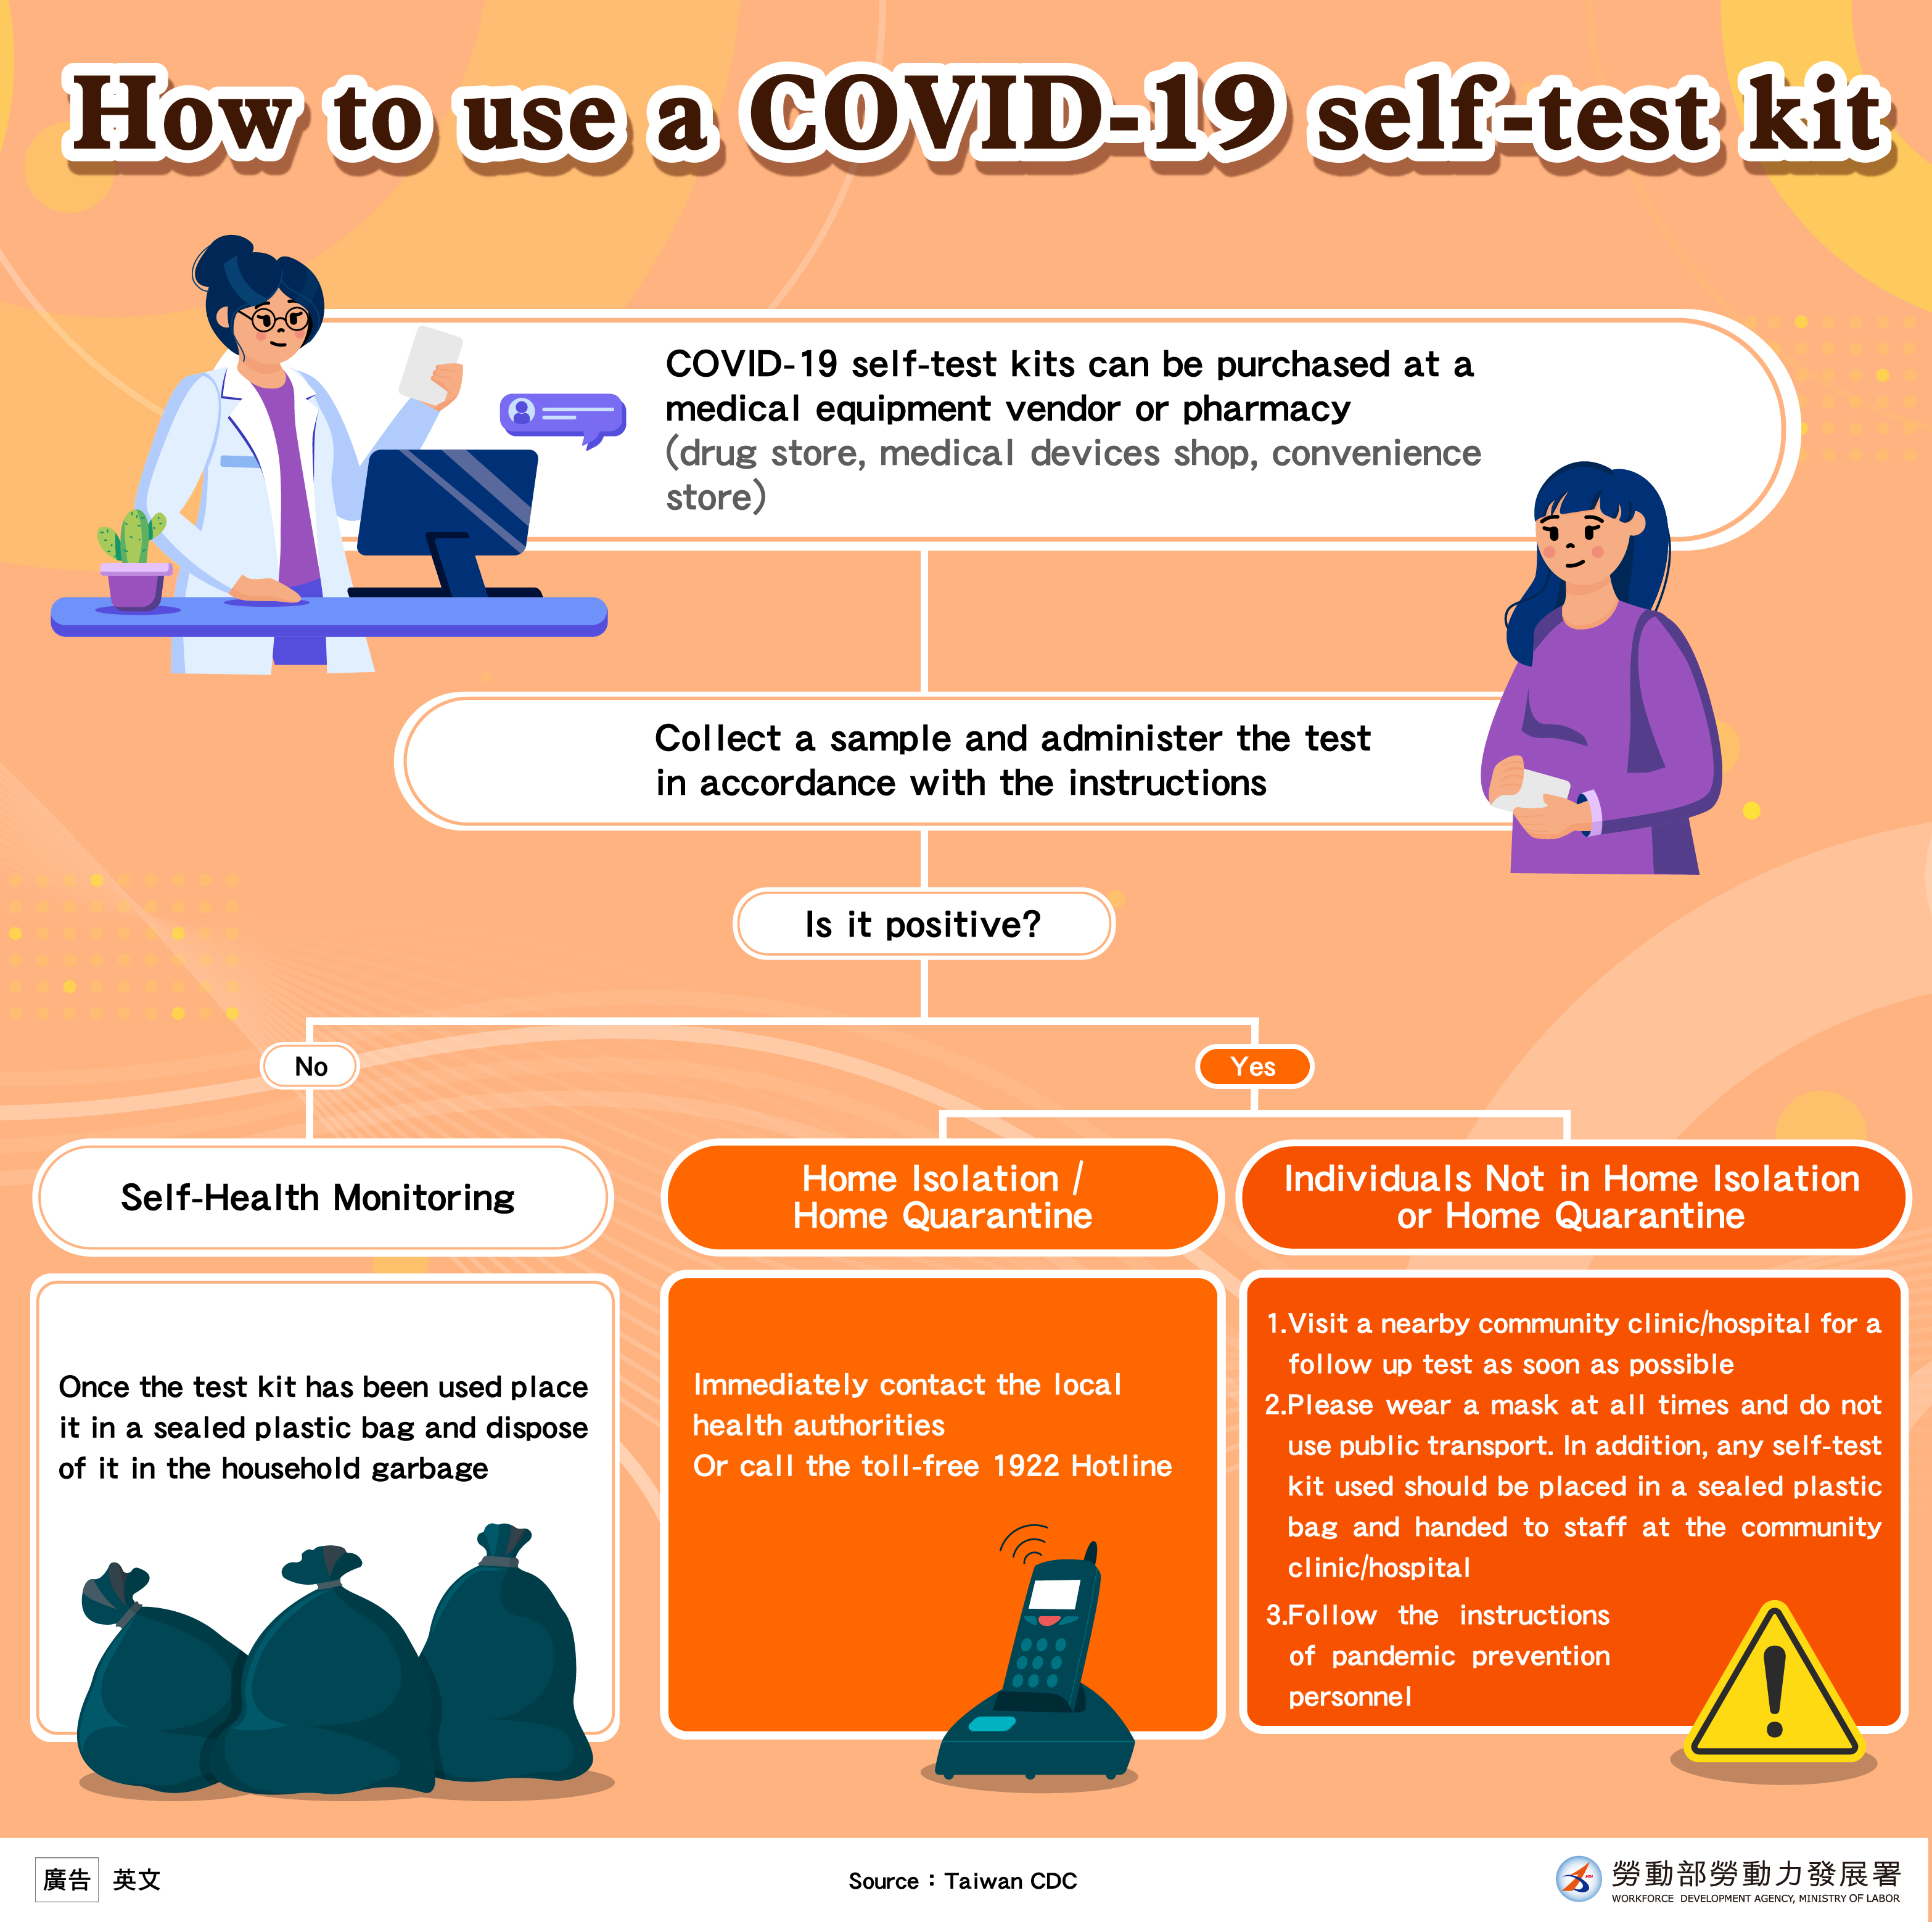 使用COVID-19家用快篩試劑流程-英.jpeg